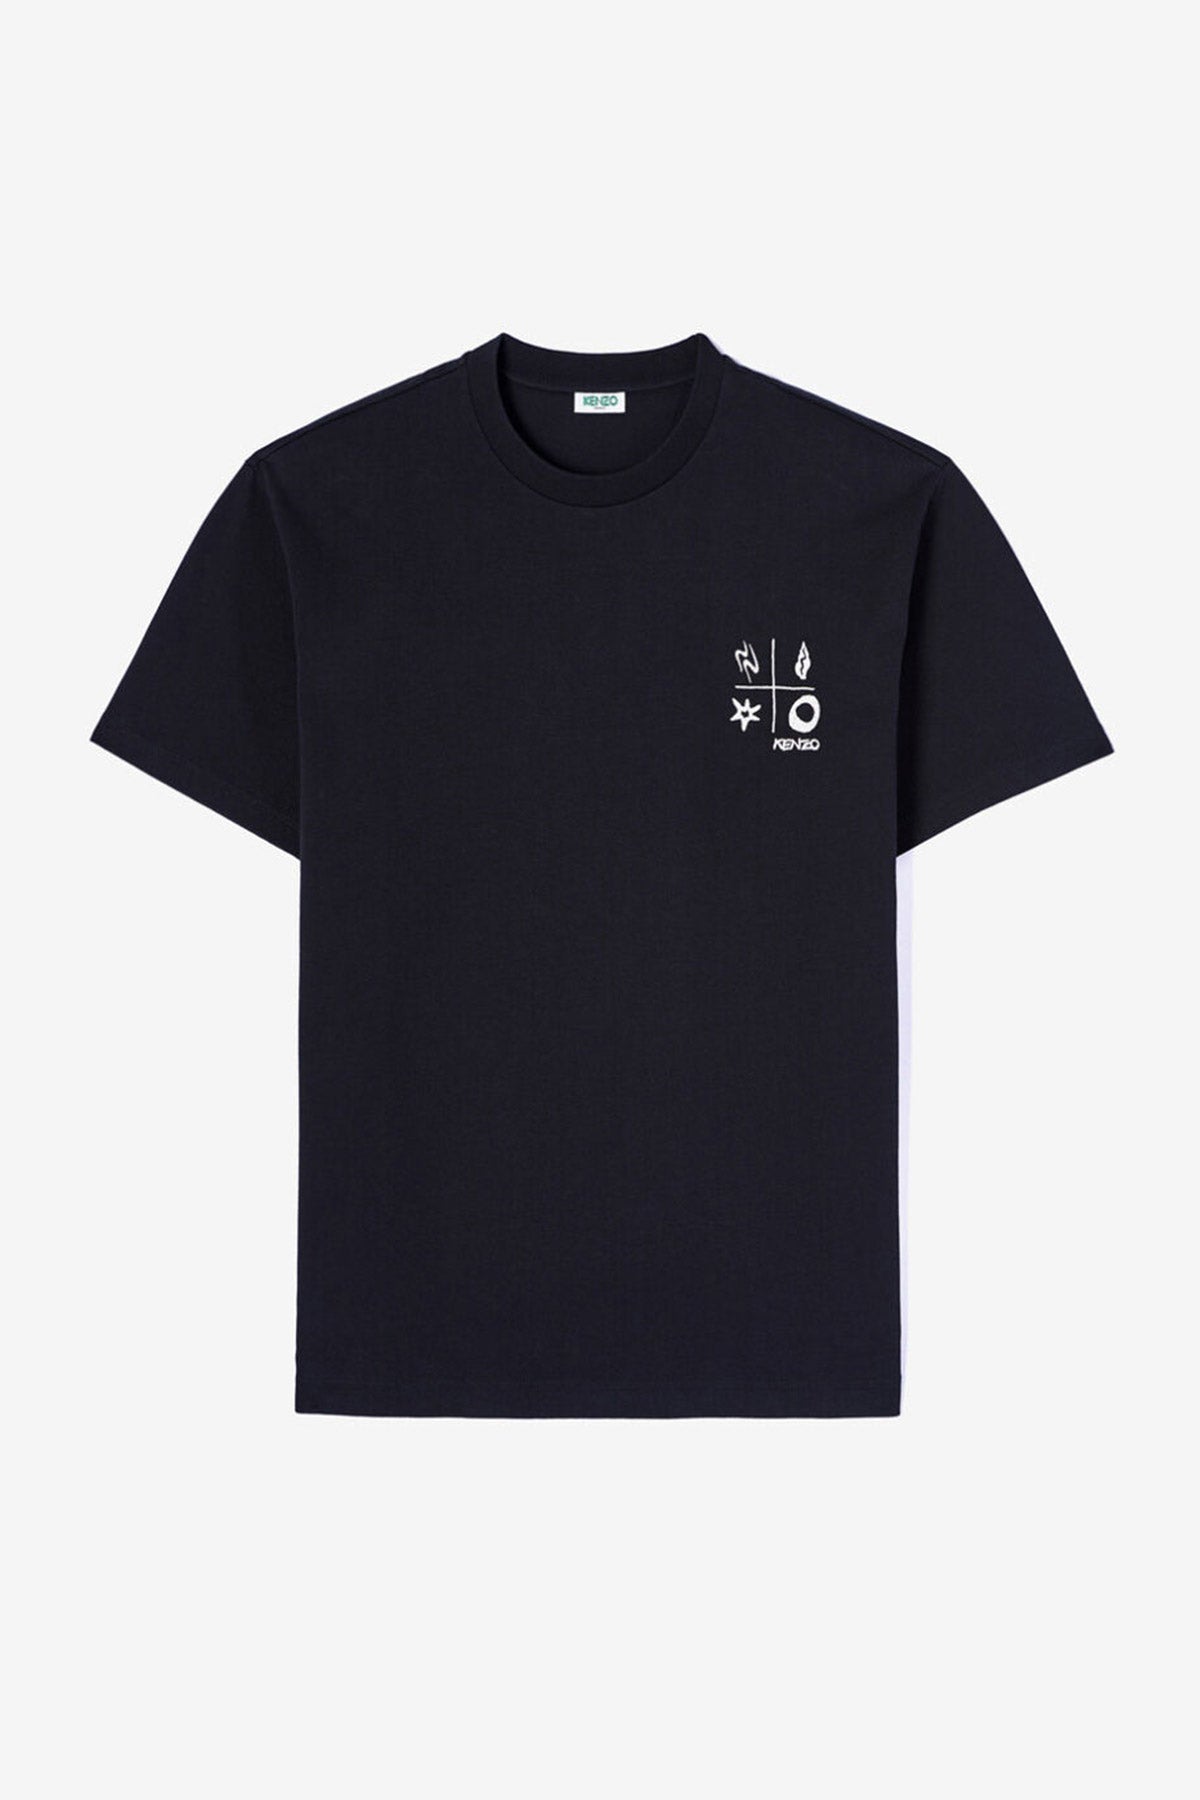 Kenzo T-shirt-Libas Trendy Fashion Store